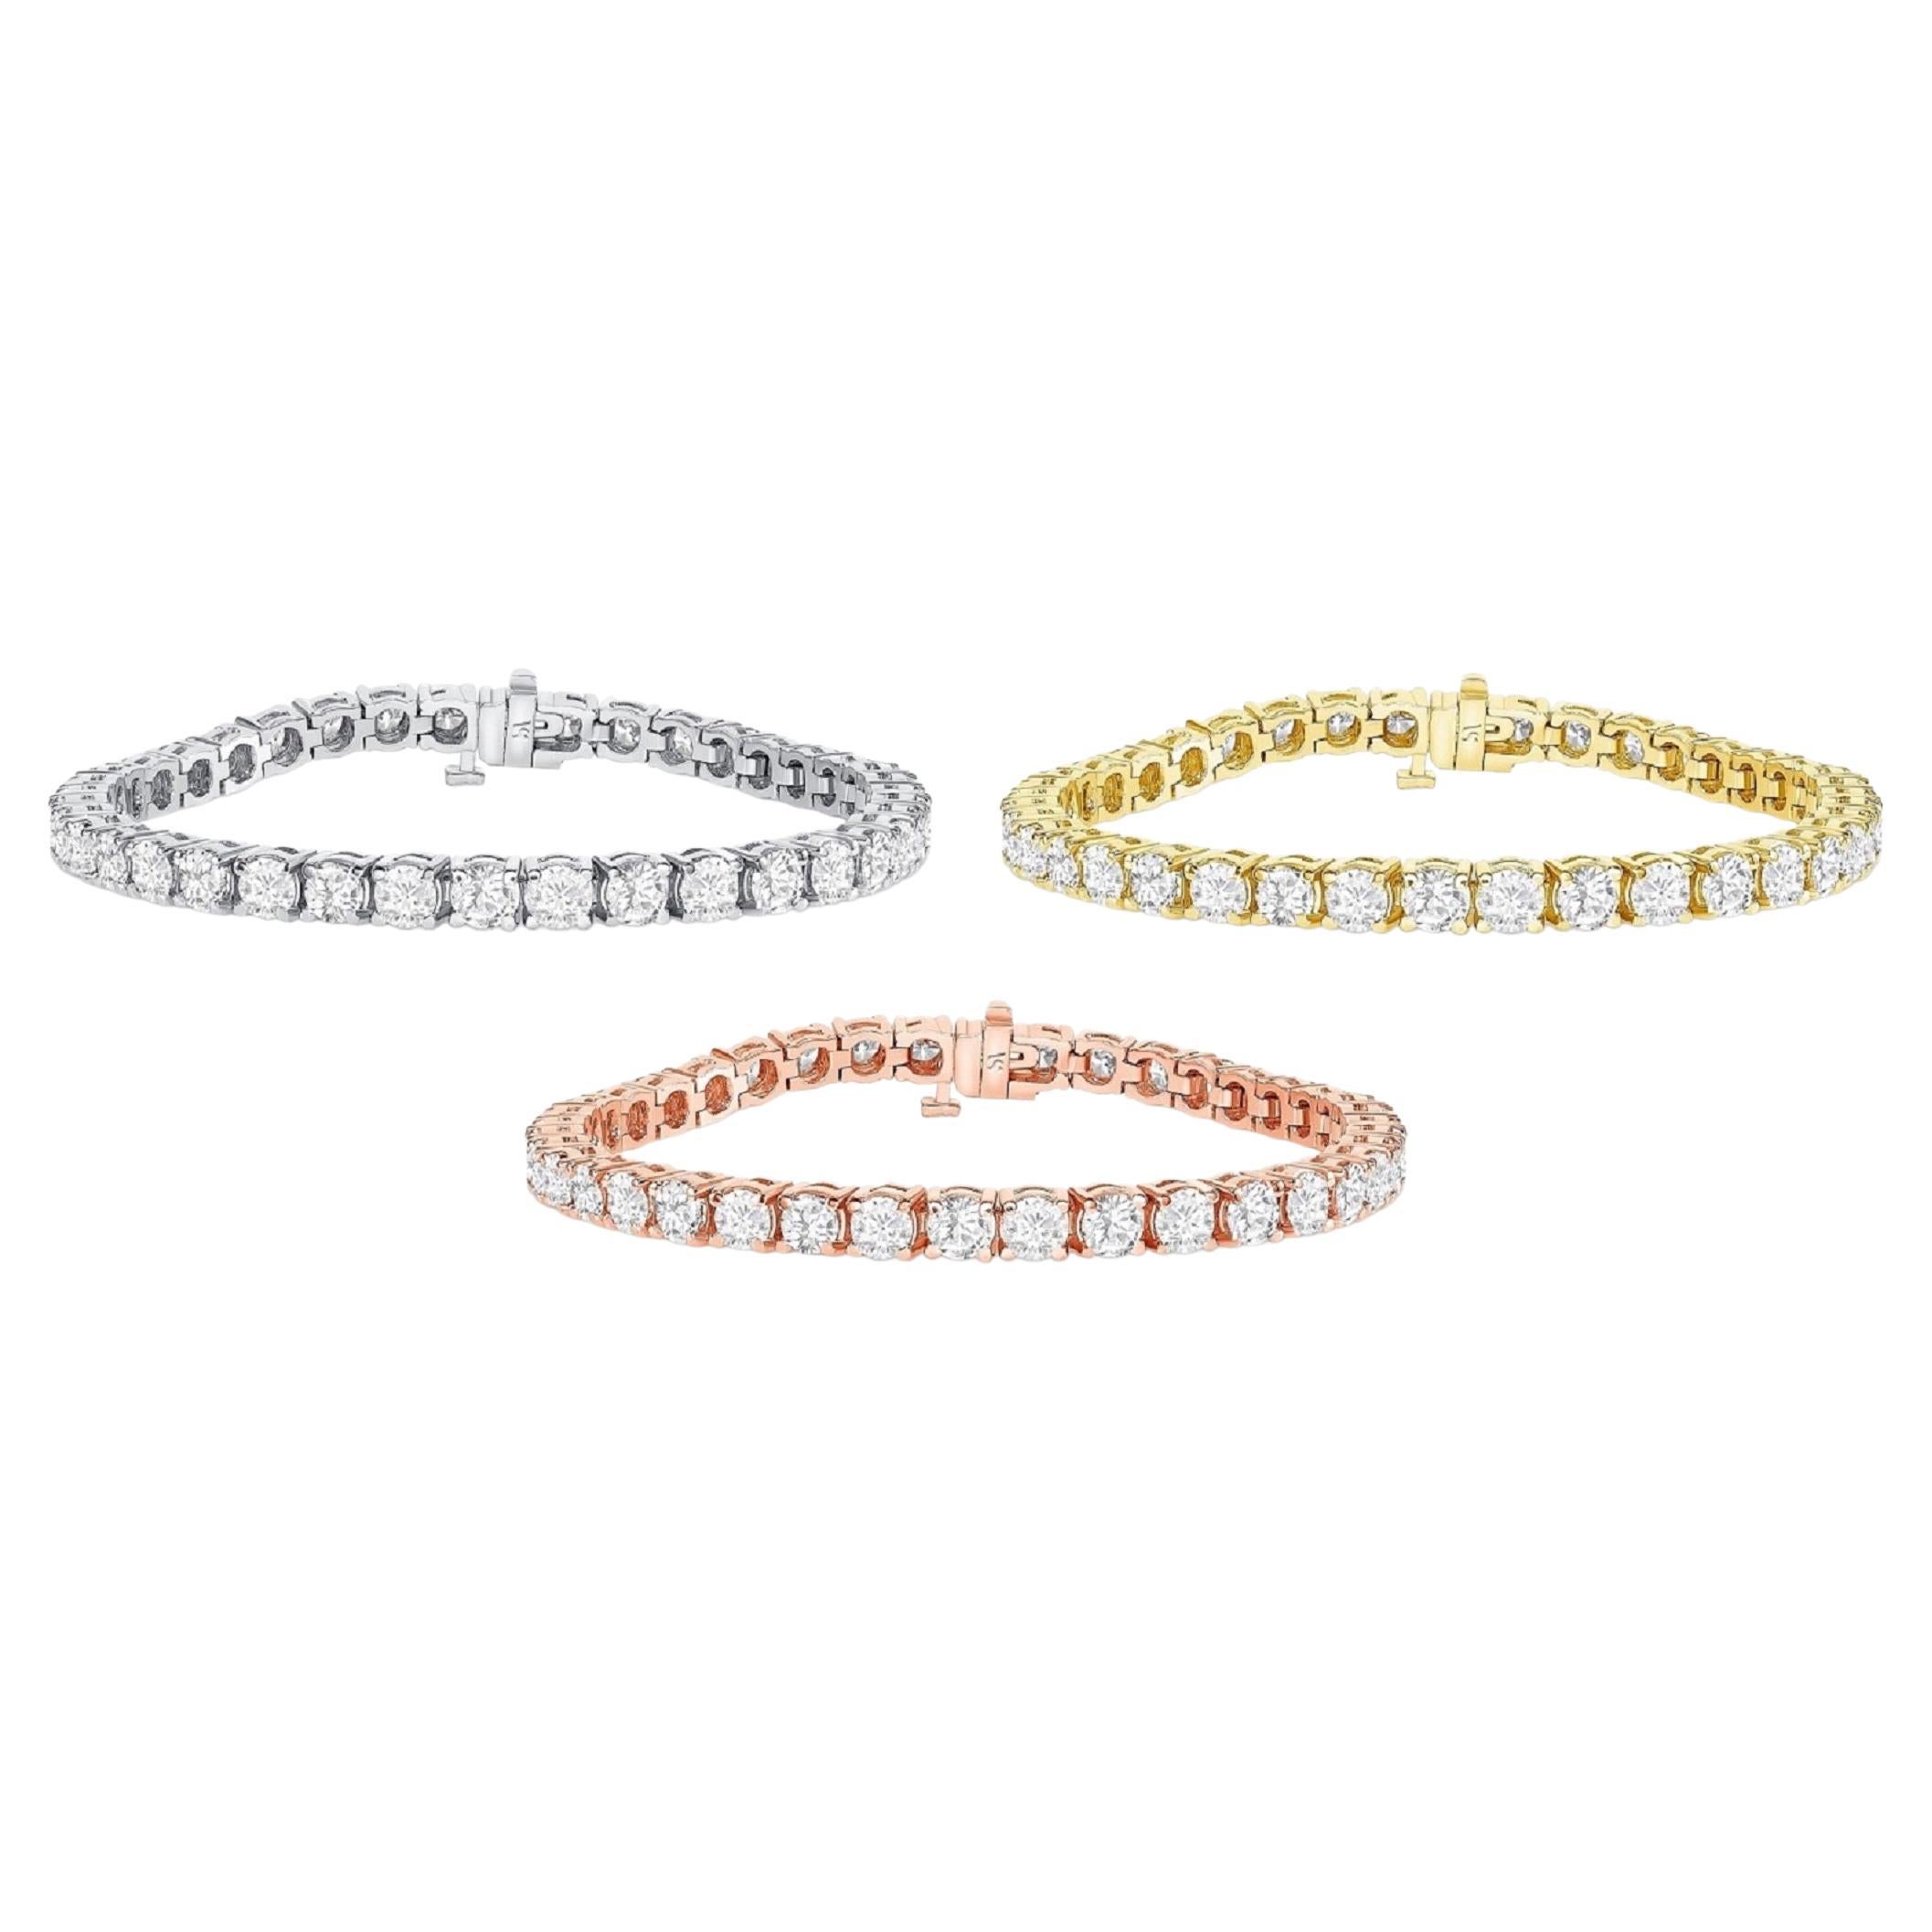 Bracelets de tennis 9,20 carats poids total, or massif 14 carats, bracelet en diamants et diamants ronds